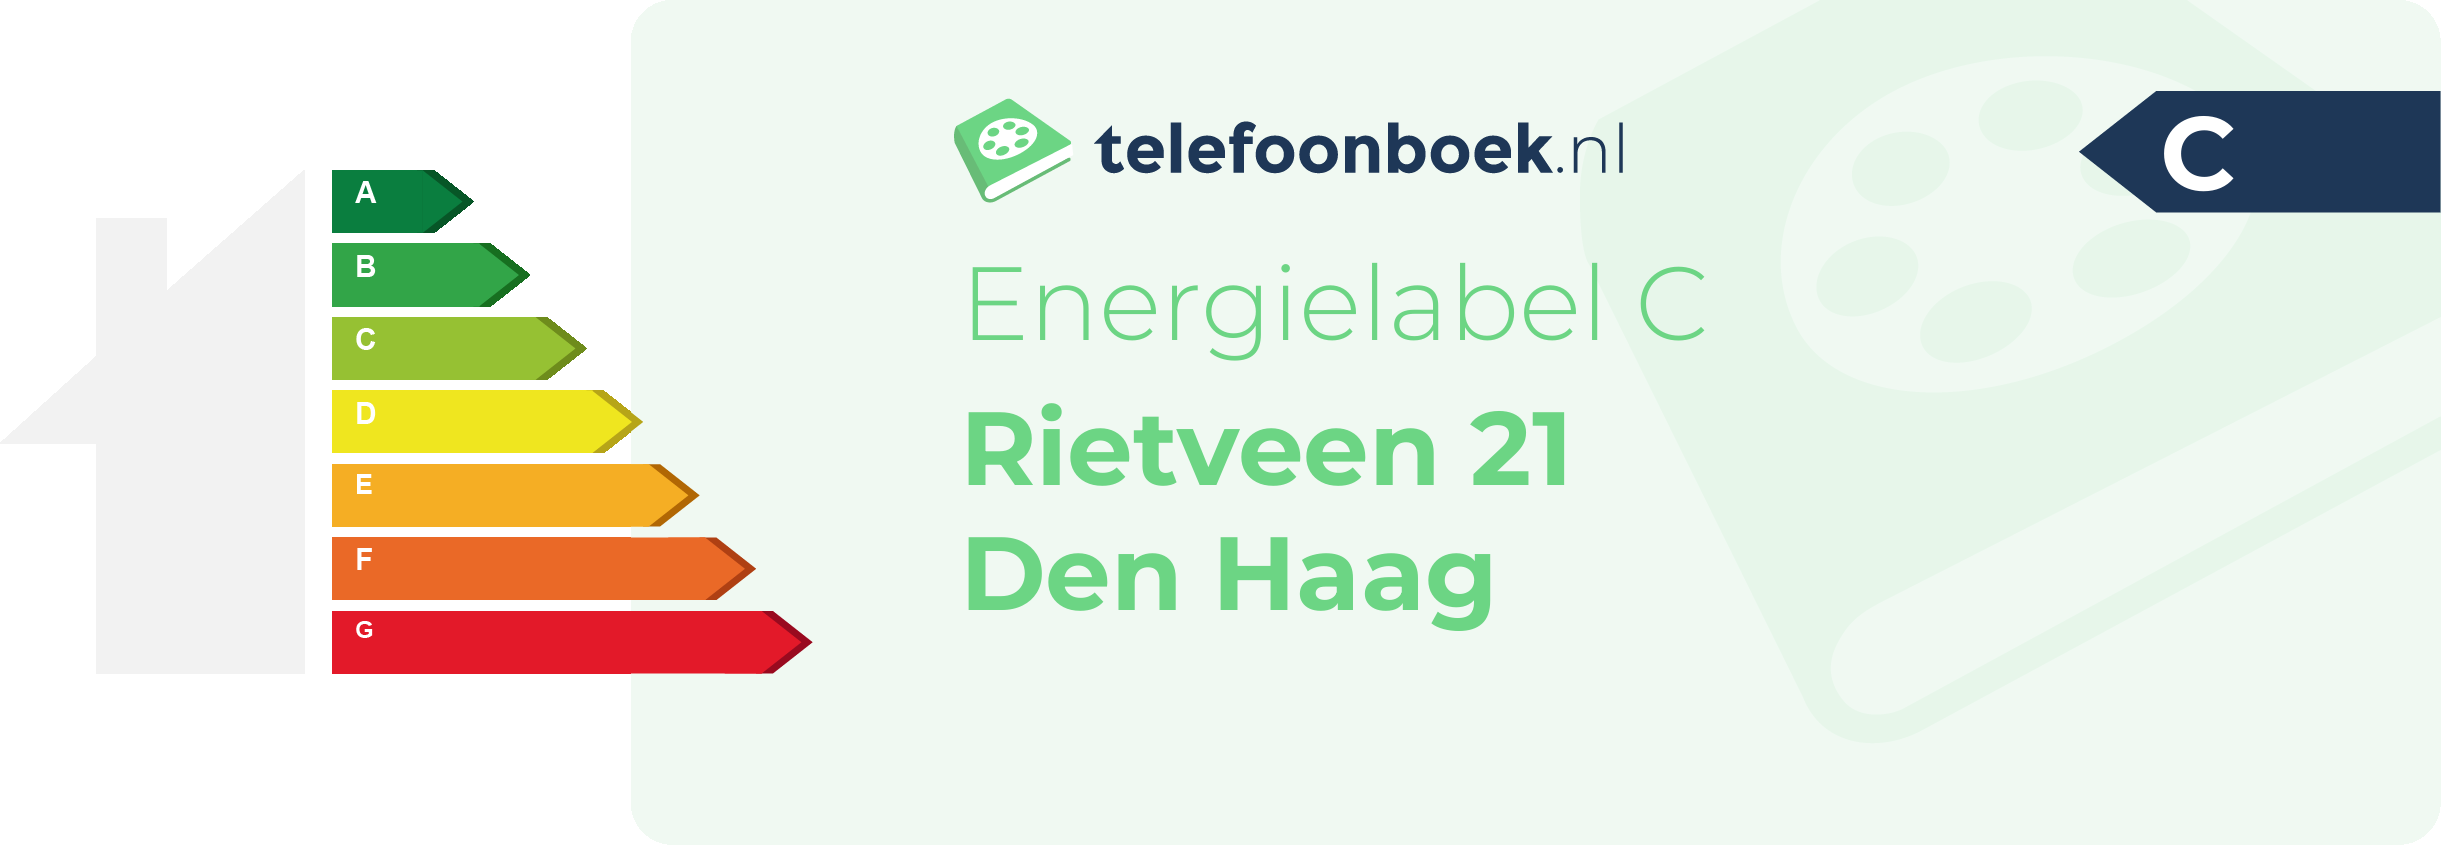 Energielabel Rietveen 21 Den Haag